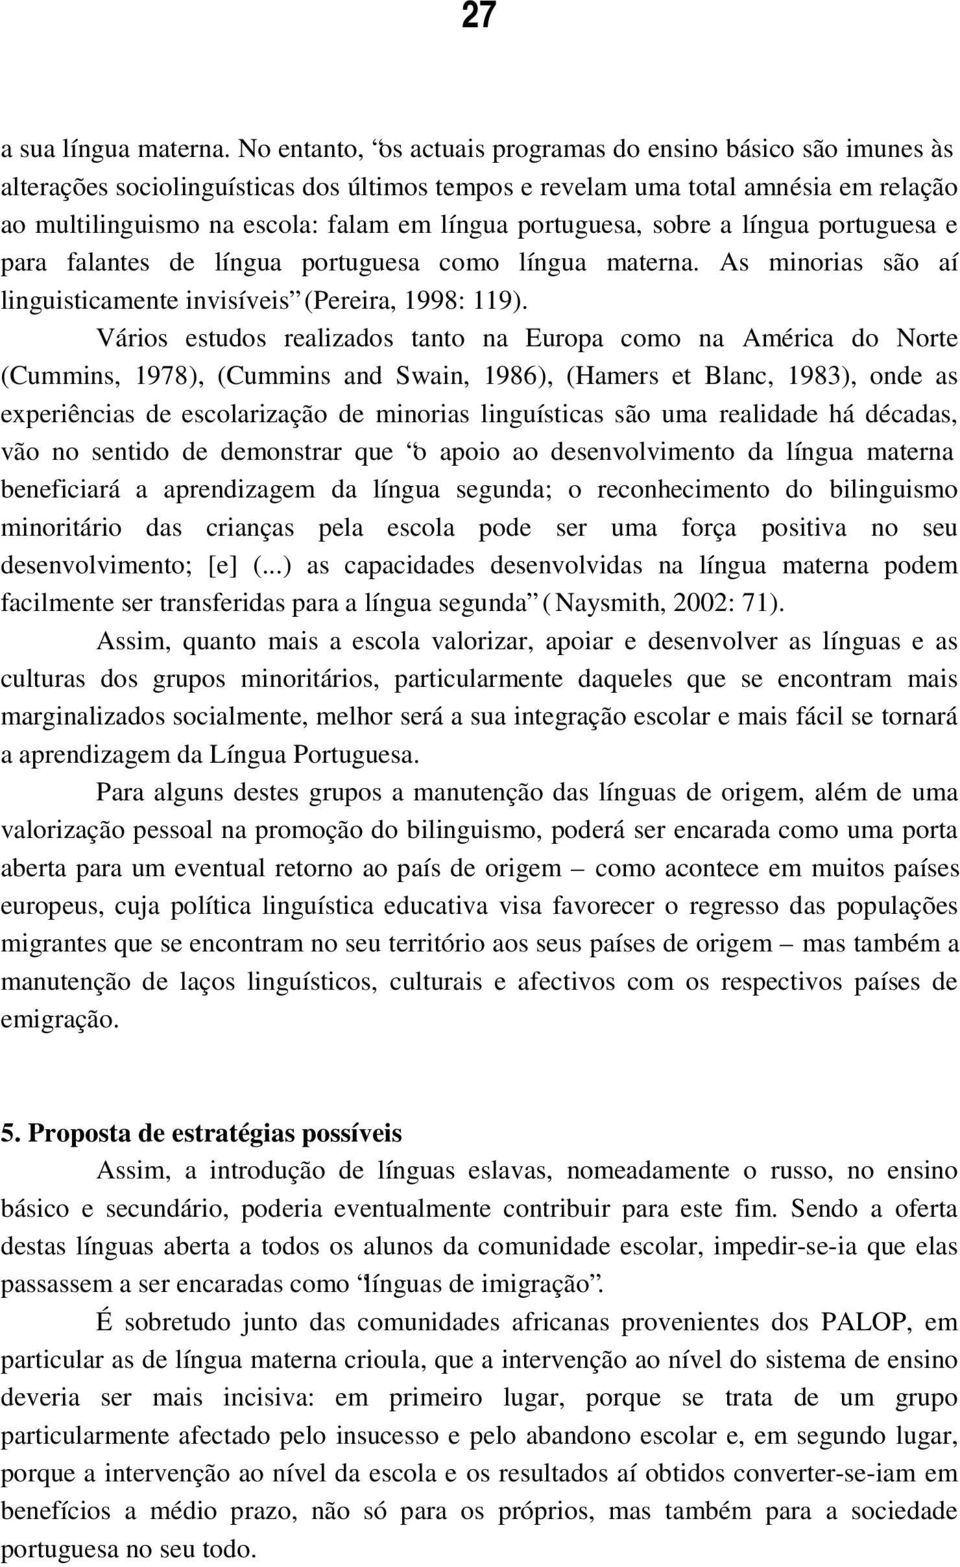 portuguesa, sobre a língua portuguesa e para falantes de língua portuguesa como língua materna. As minorias são aí linguisticamente invisíveis (Pereira, 1998: 119).